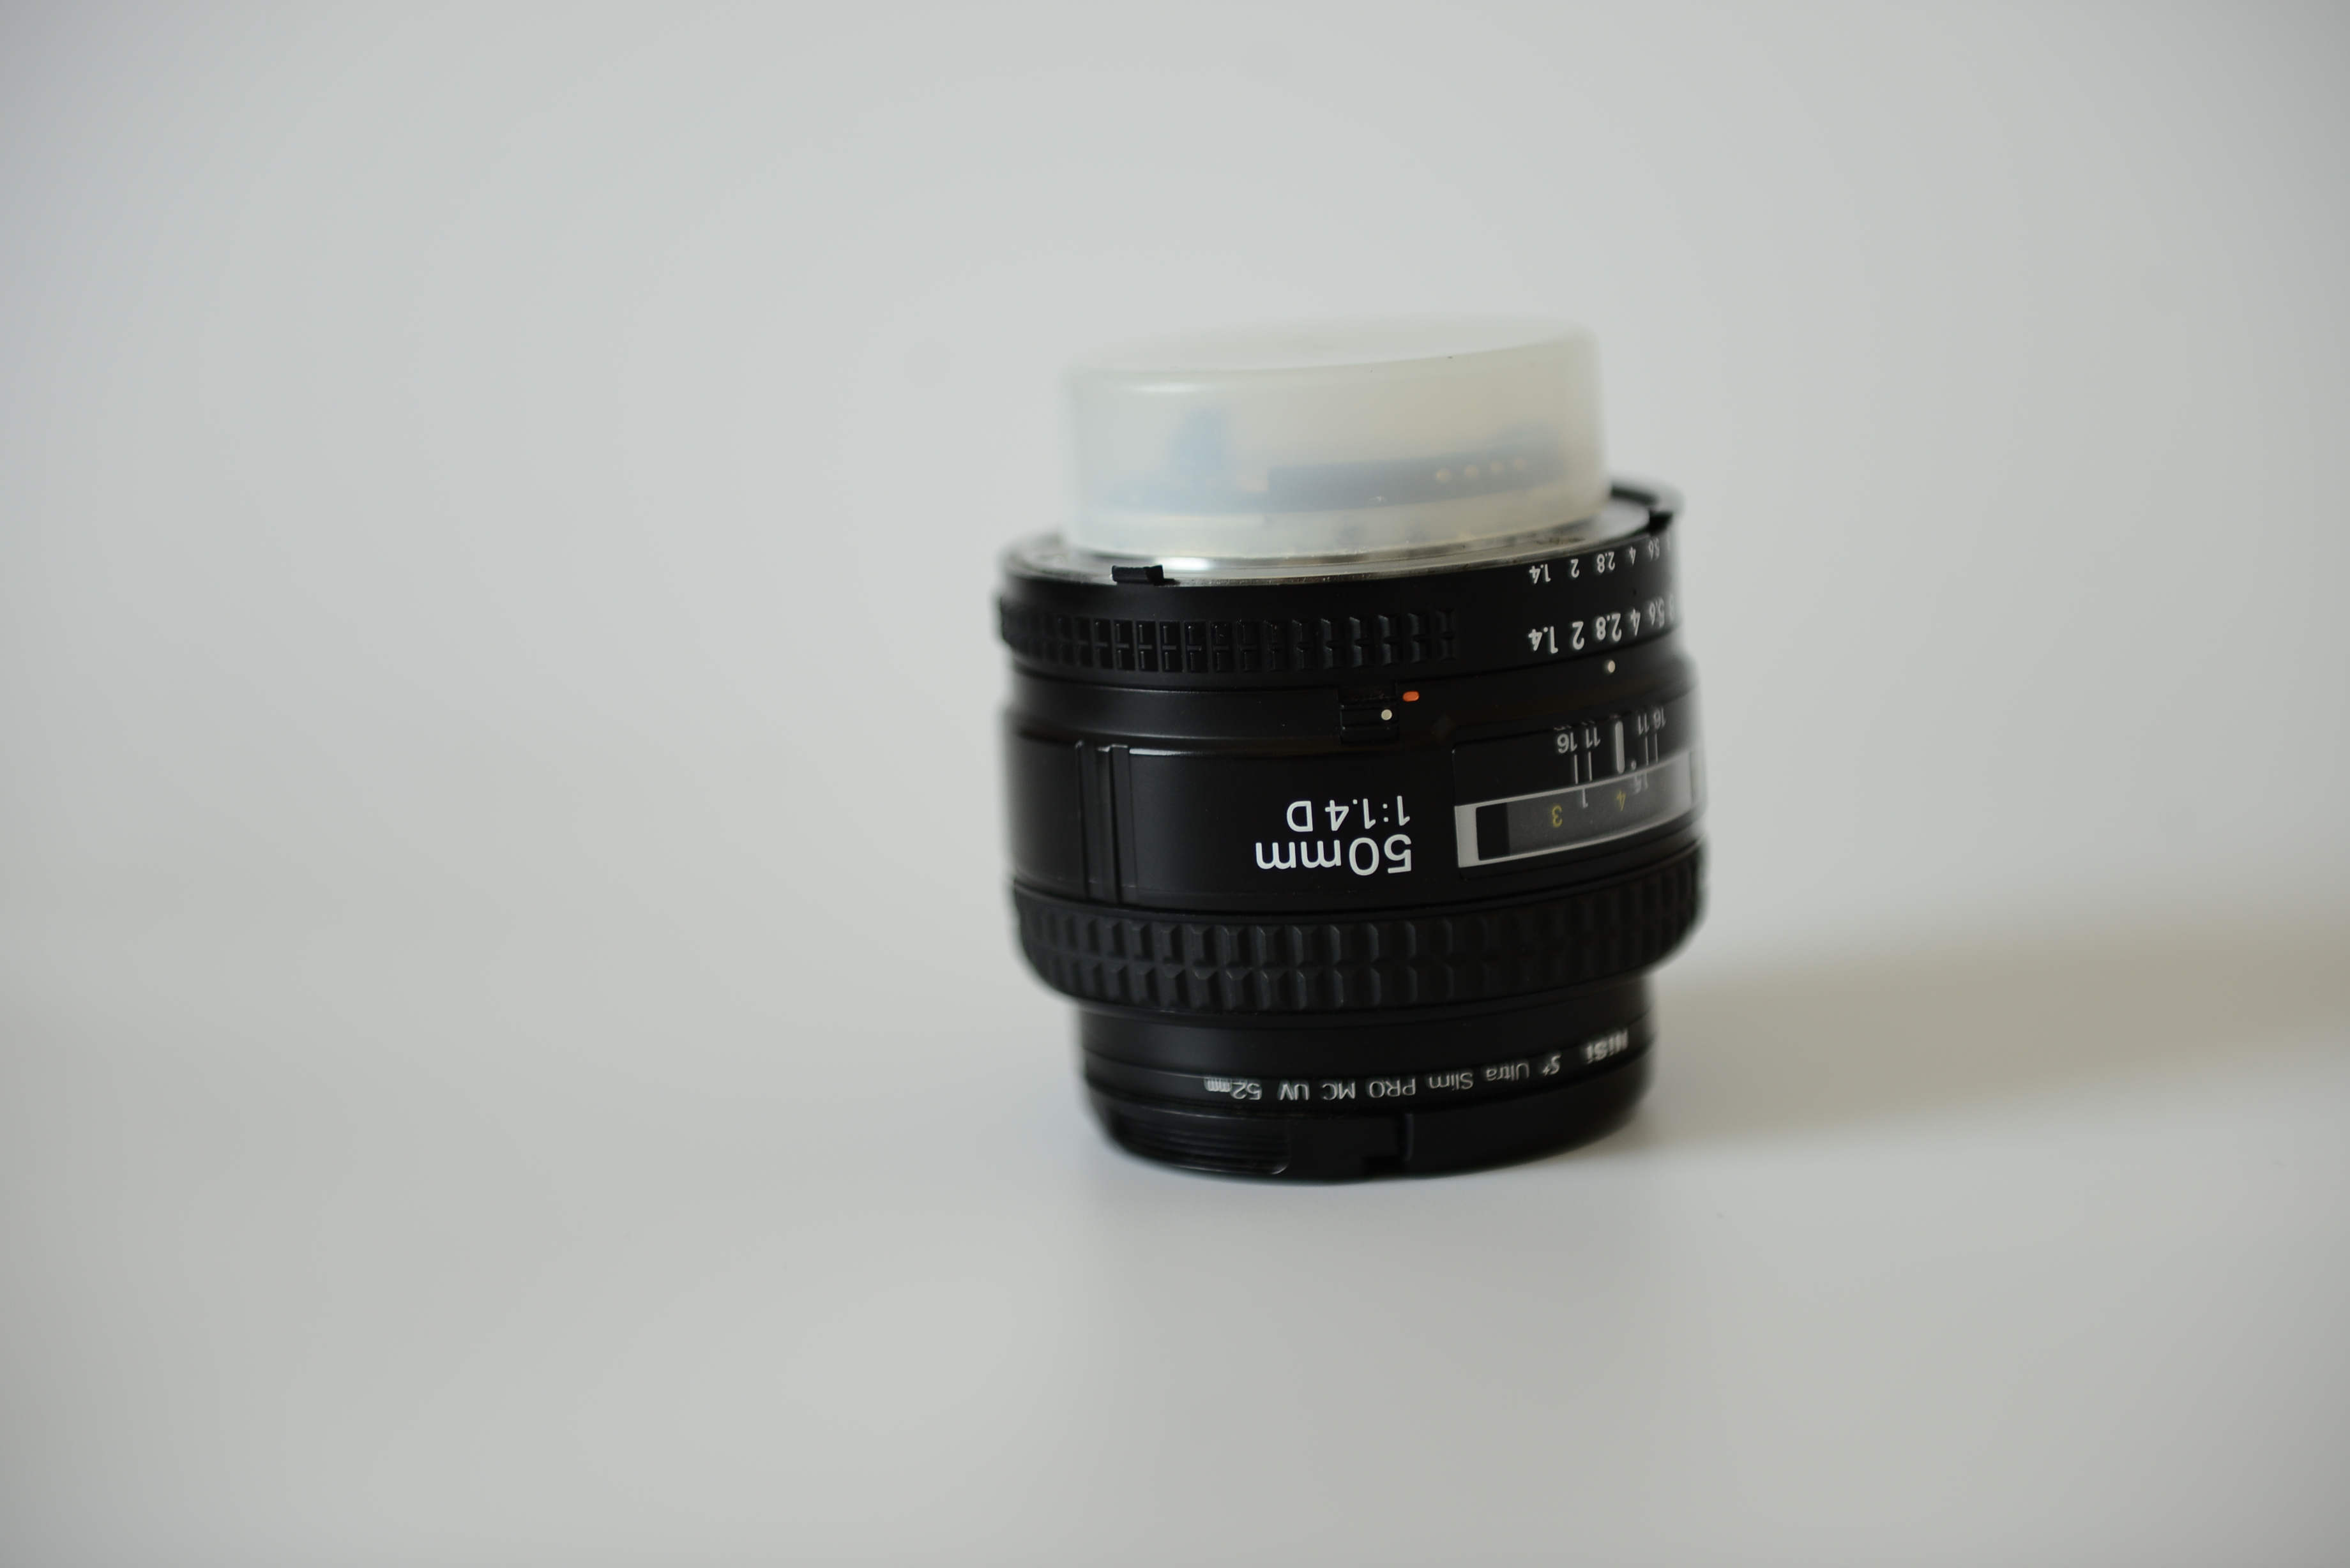 尼康 AF 50mm f/1.4D